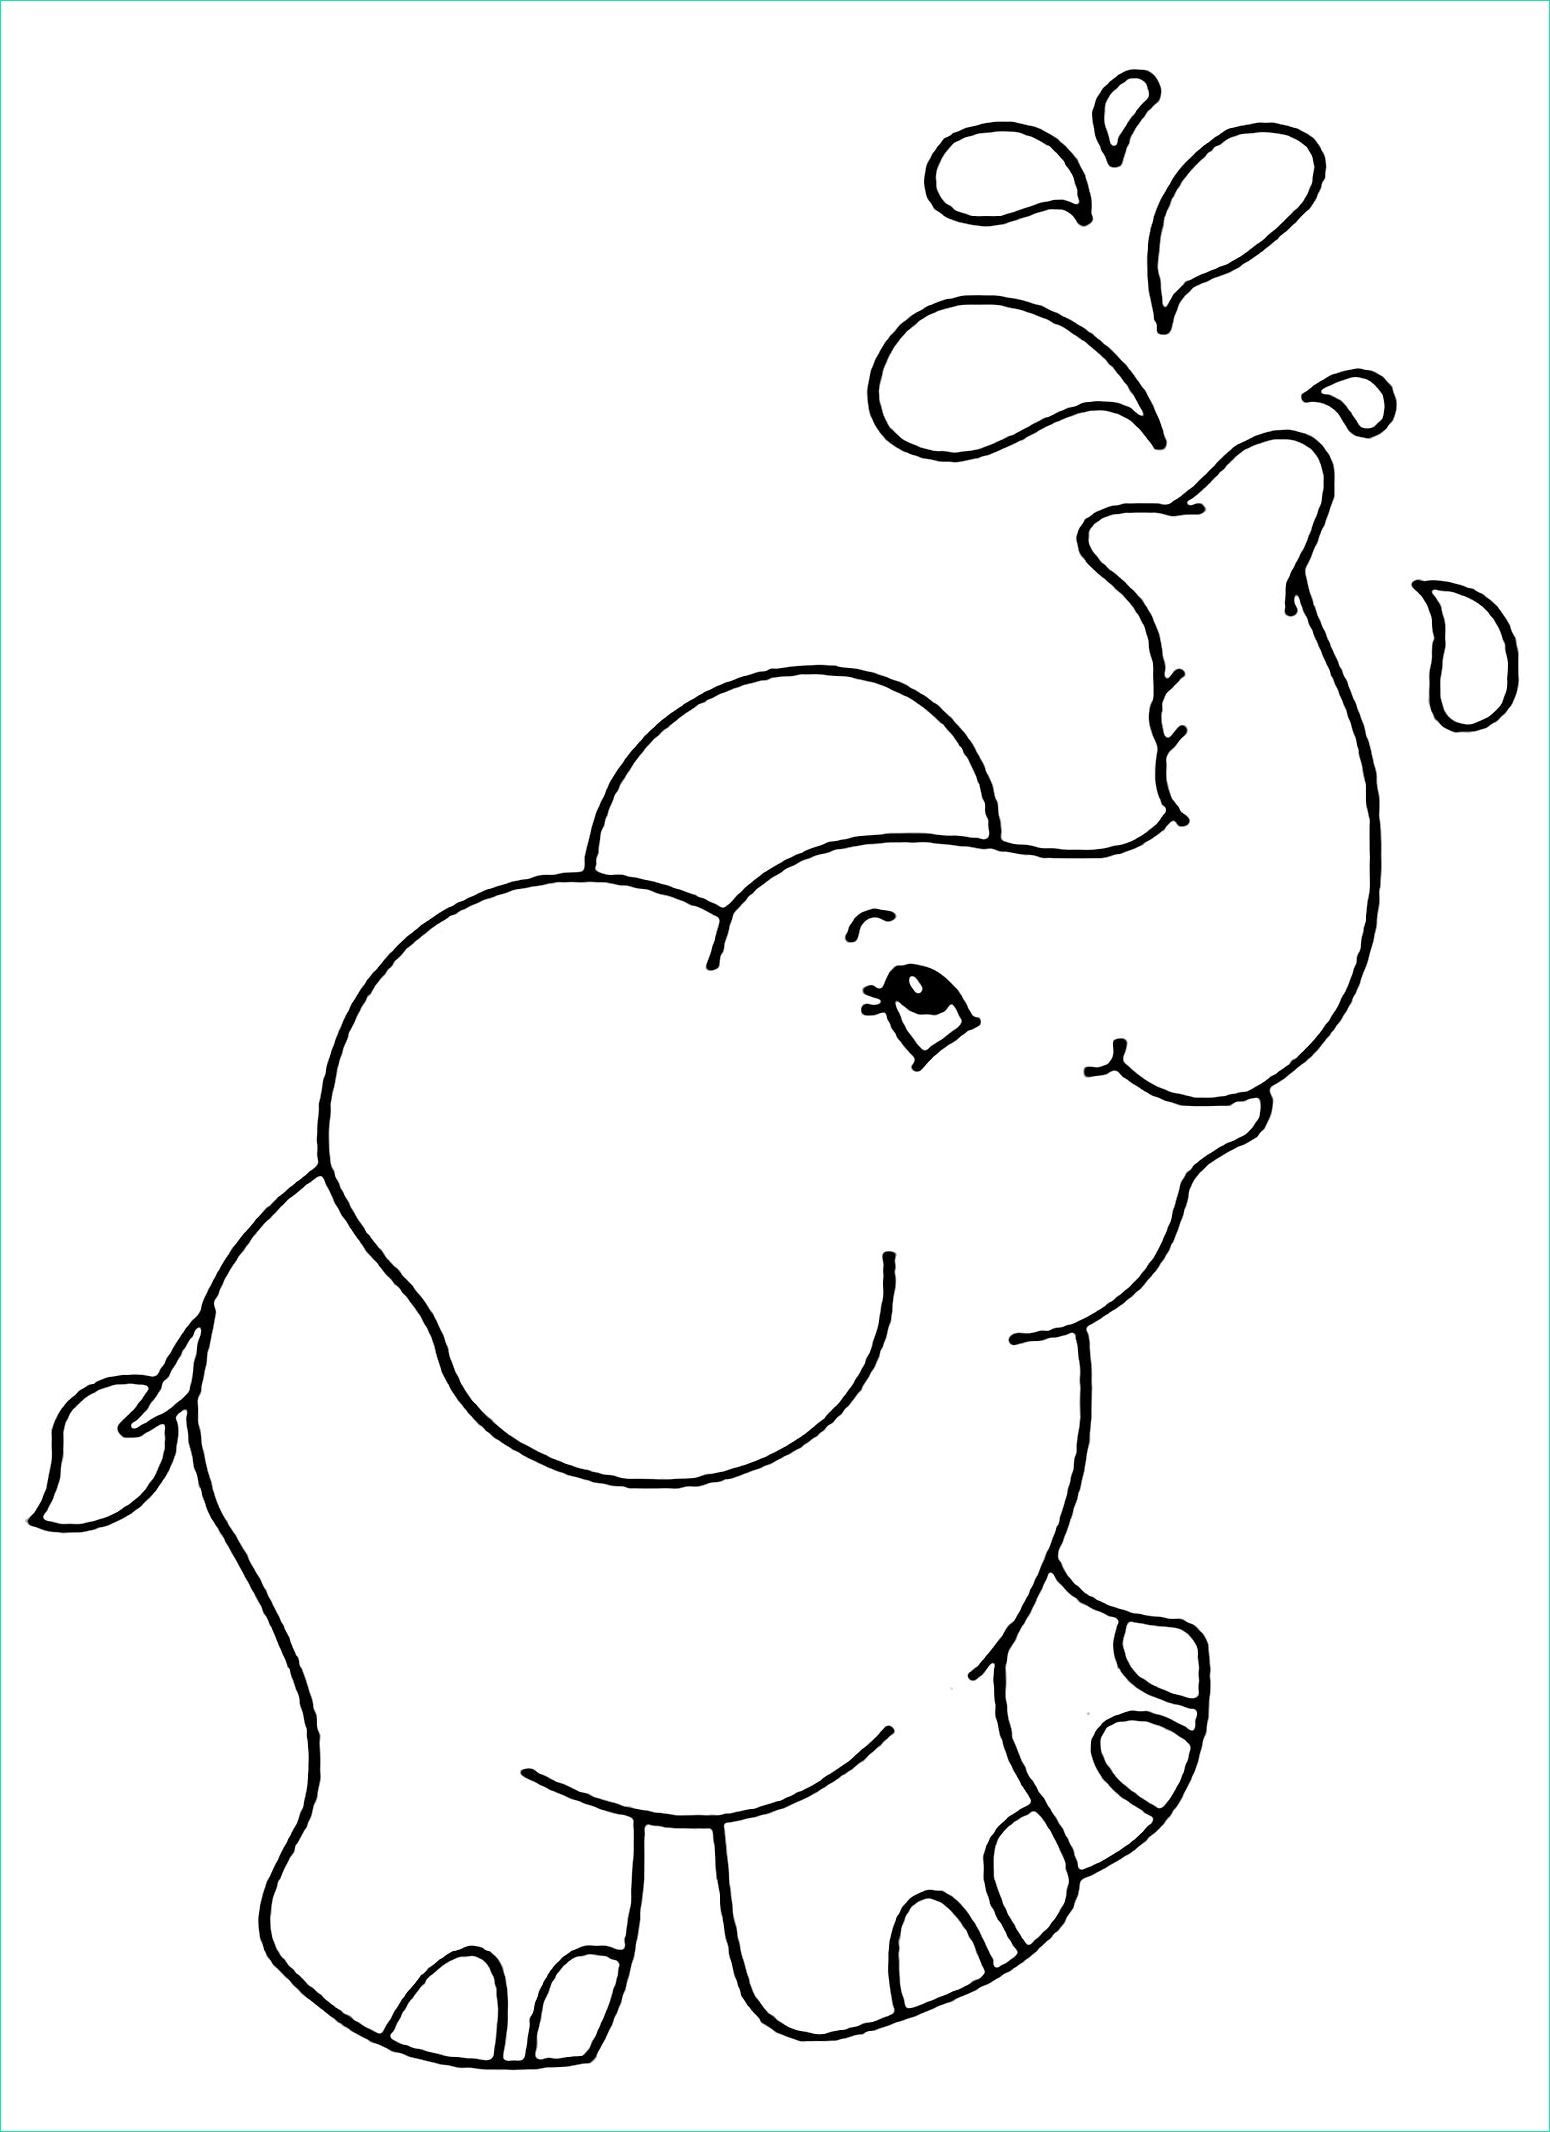 éléphant à Colorier Unique Image Coloriage D éléphant à Telecharger Gratuitement